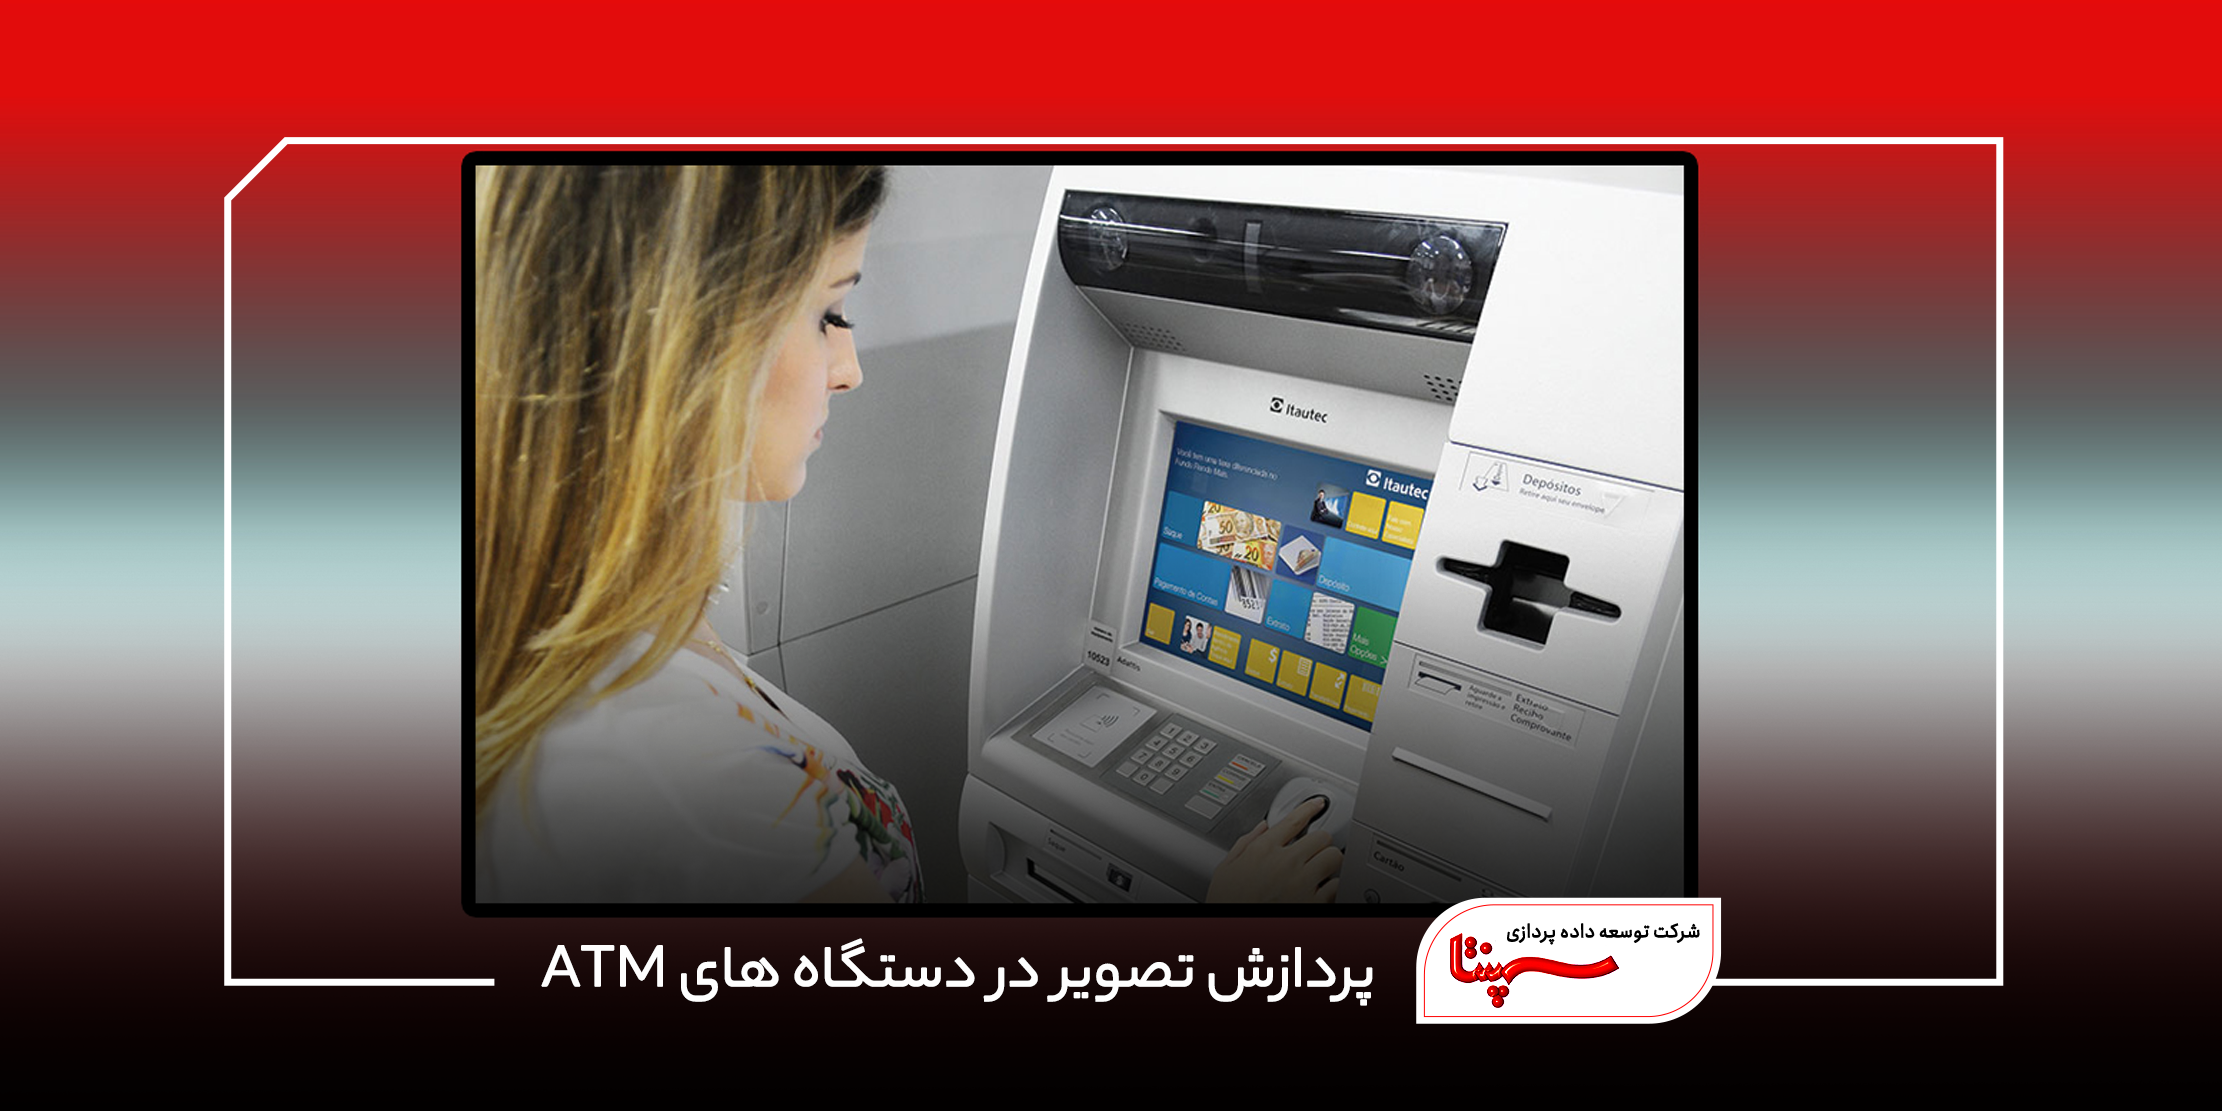 پردازش تصویر در دستگاه های ATM